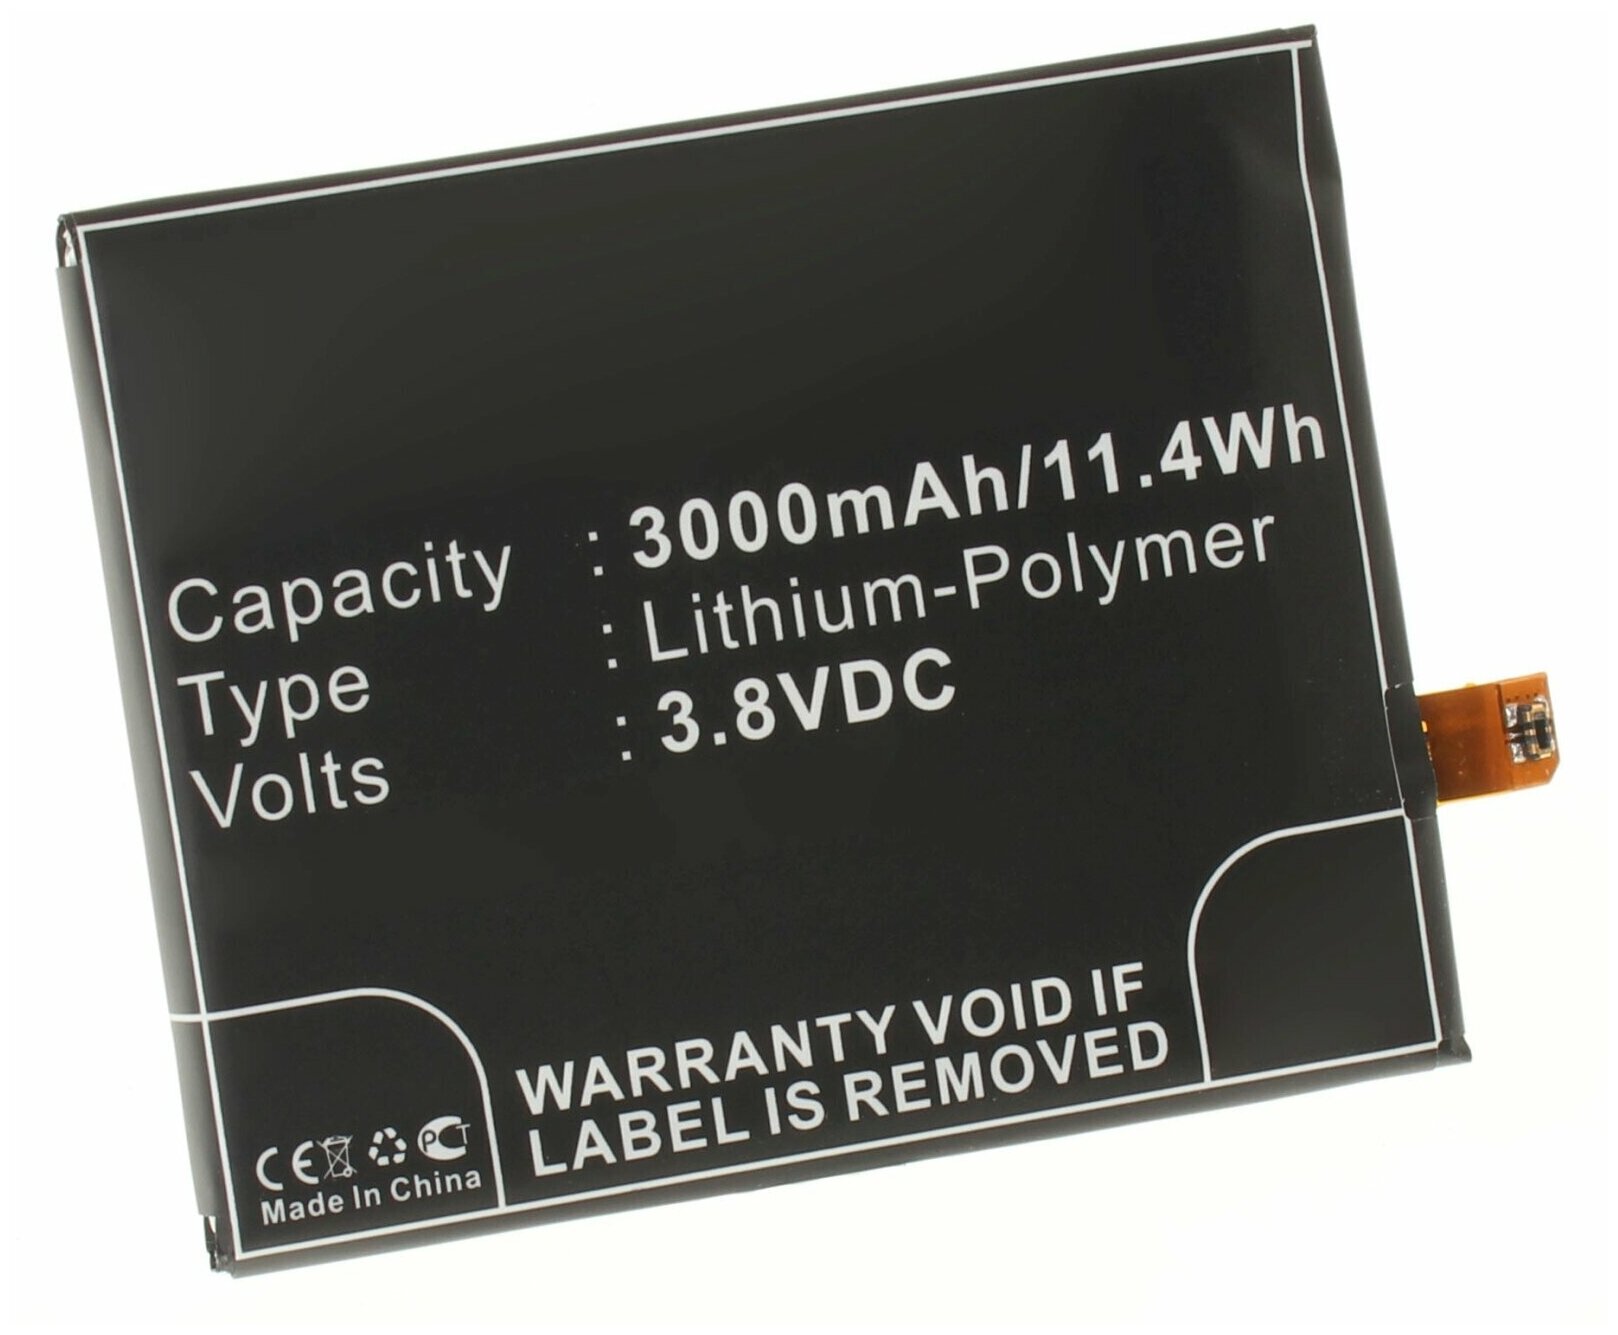 Аккумулятор iBatt iB-U1-M578 3000mAh для LG D802, D800, D802 G2, D801, D805, D803, LS980, Optimus G2, D801 G2, DS1203, VS980, D800 G2,